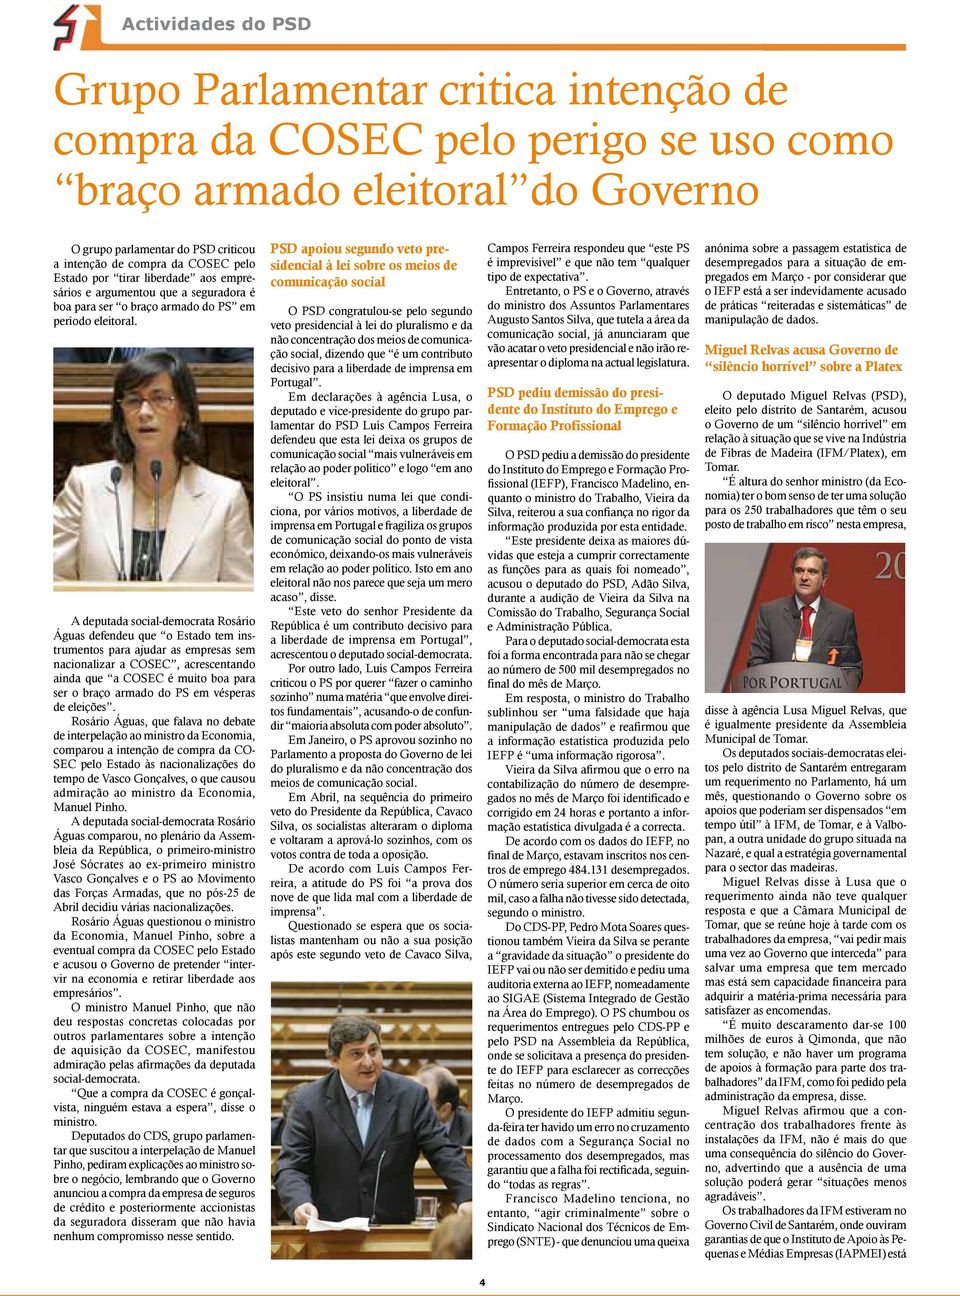 A deputada social-democrata Rosário Águas defendeu que o Estado tem instrumentos para ajudar as empresas sem nacionalizar a COSEC, acrescentando ainda que a COSEC é muito boa para ser o braço armado